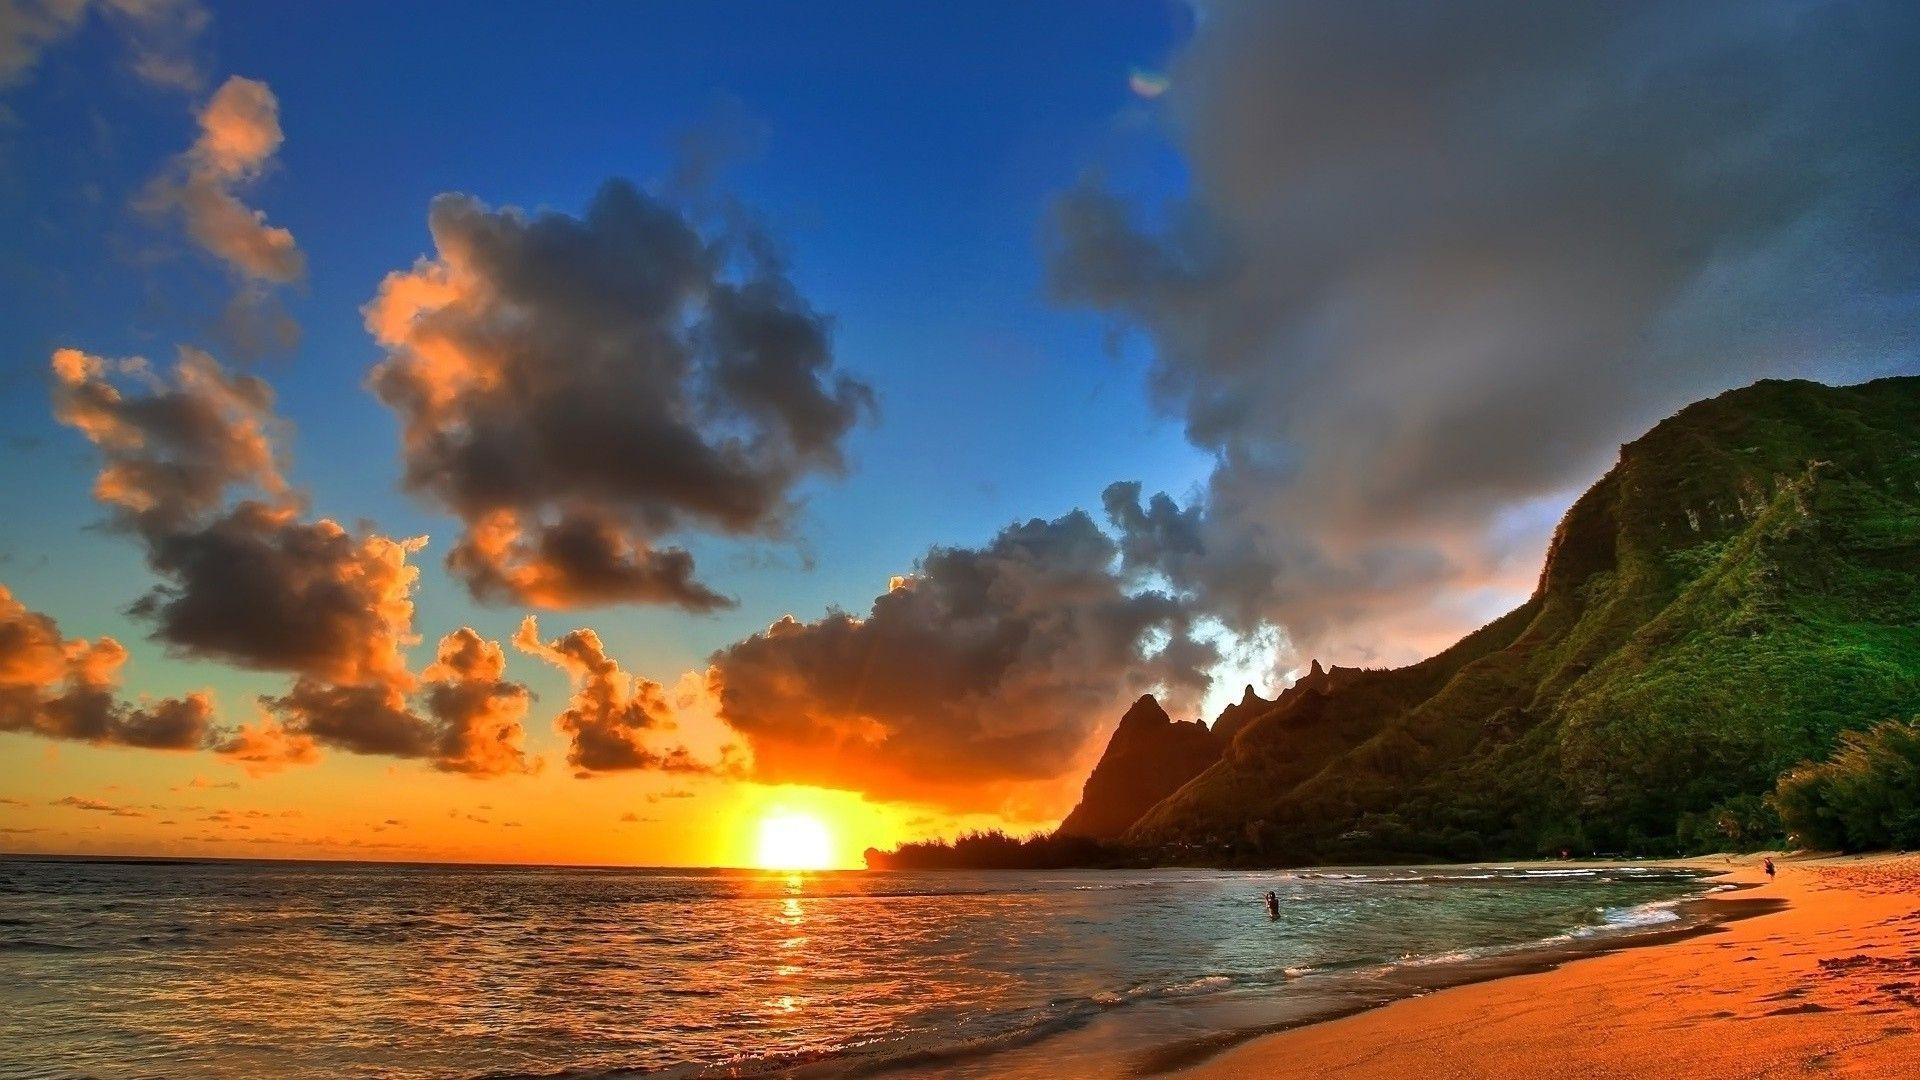 Best Of Desktop Wallpaper Beach Sunset. The Most Beautiful Beach